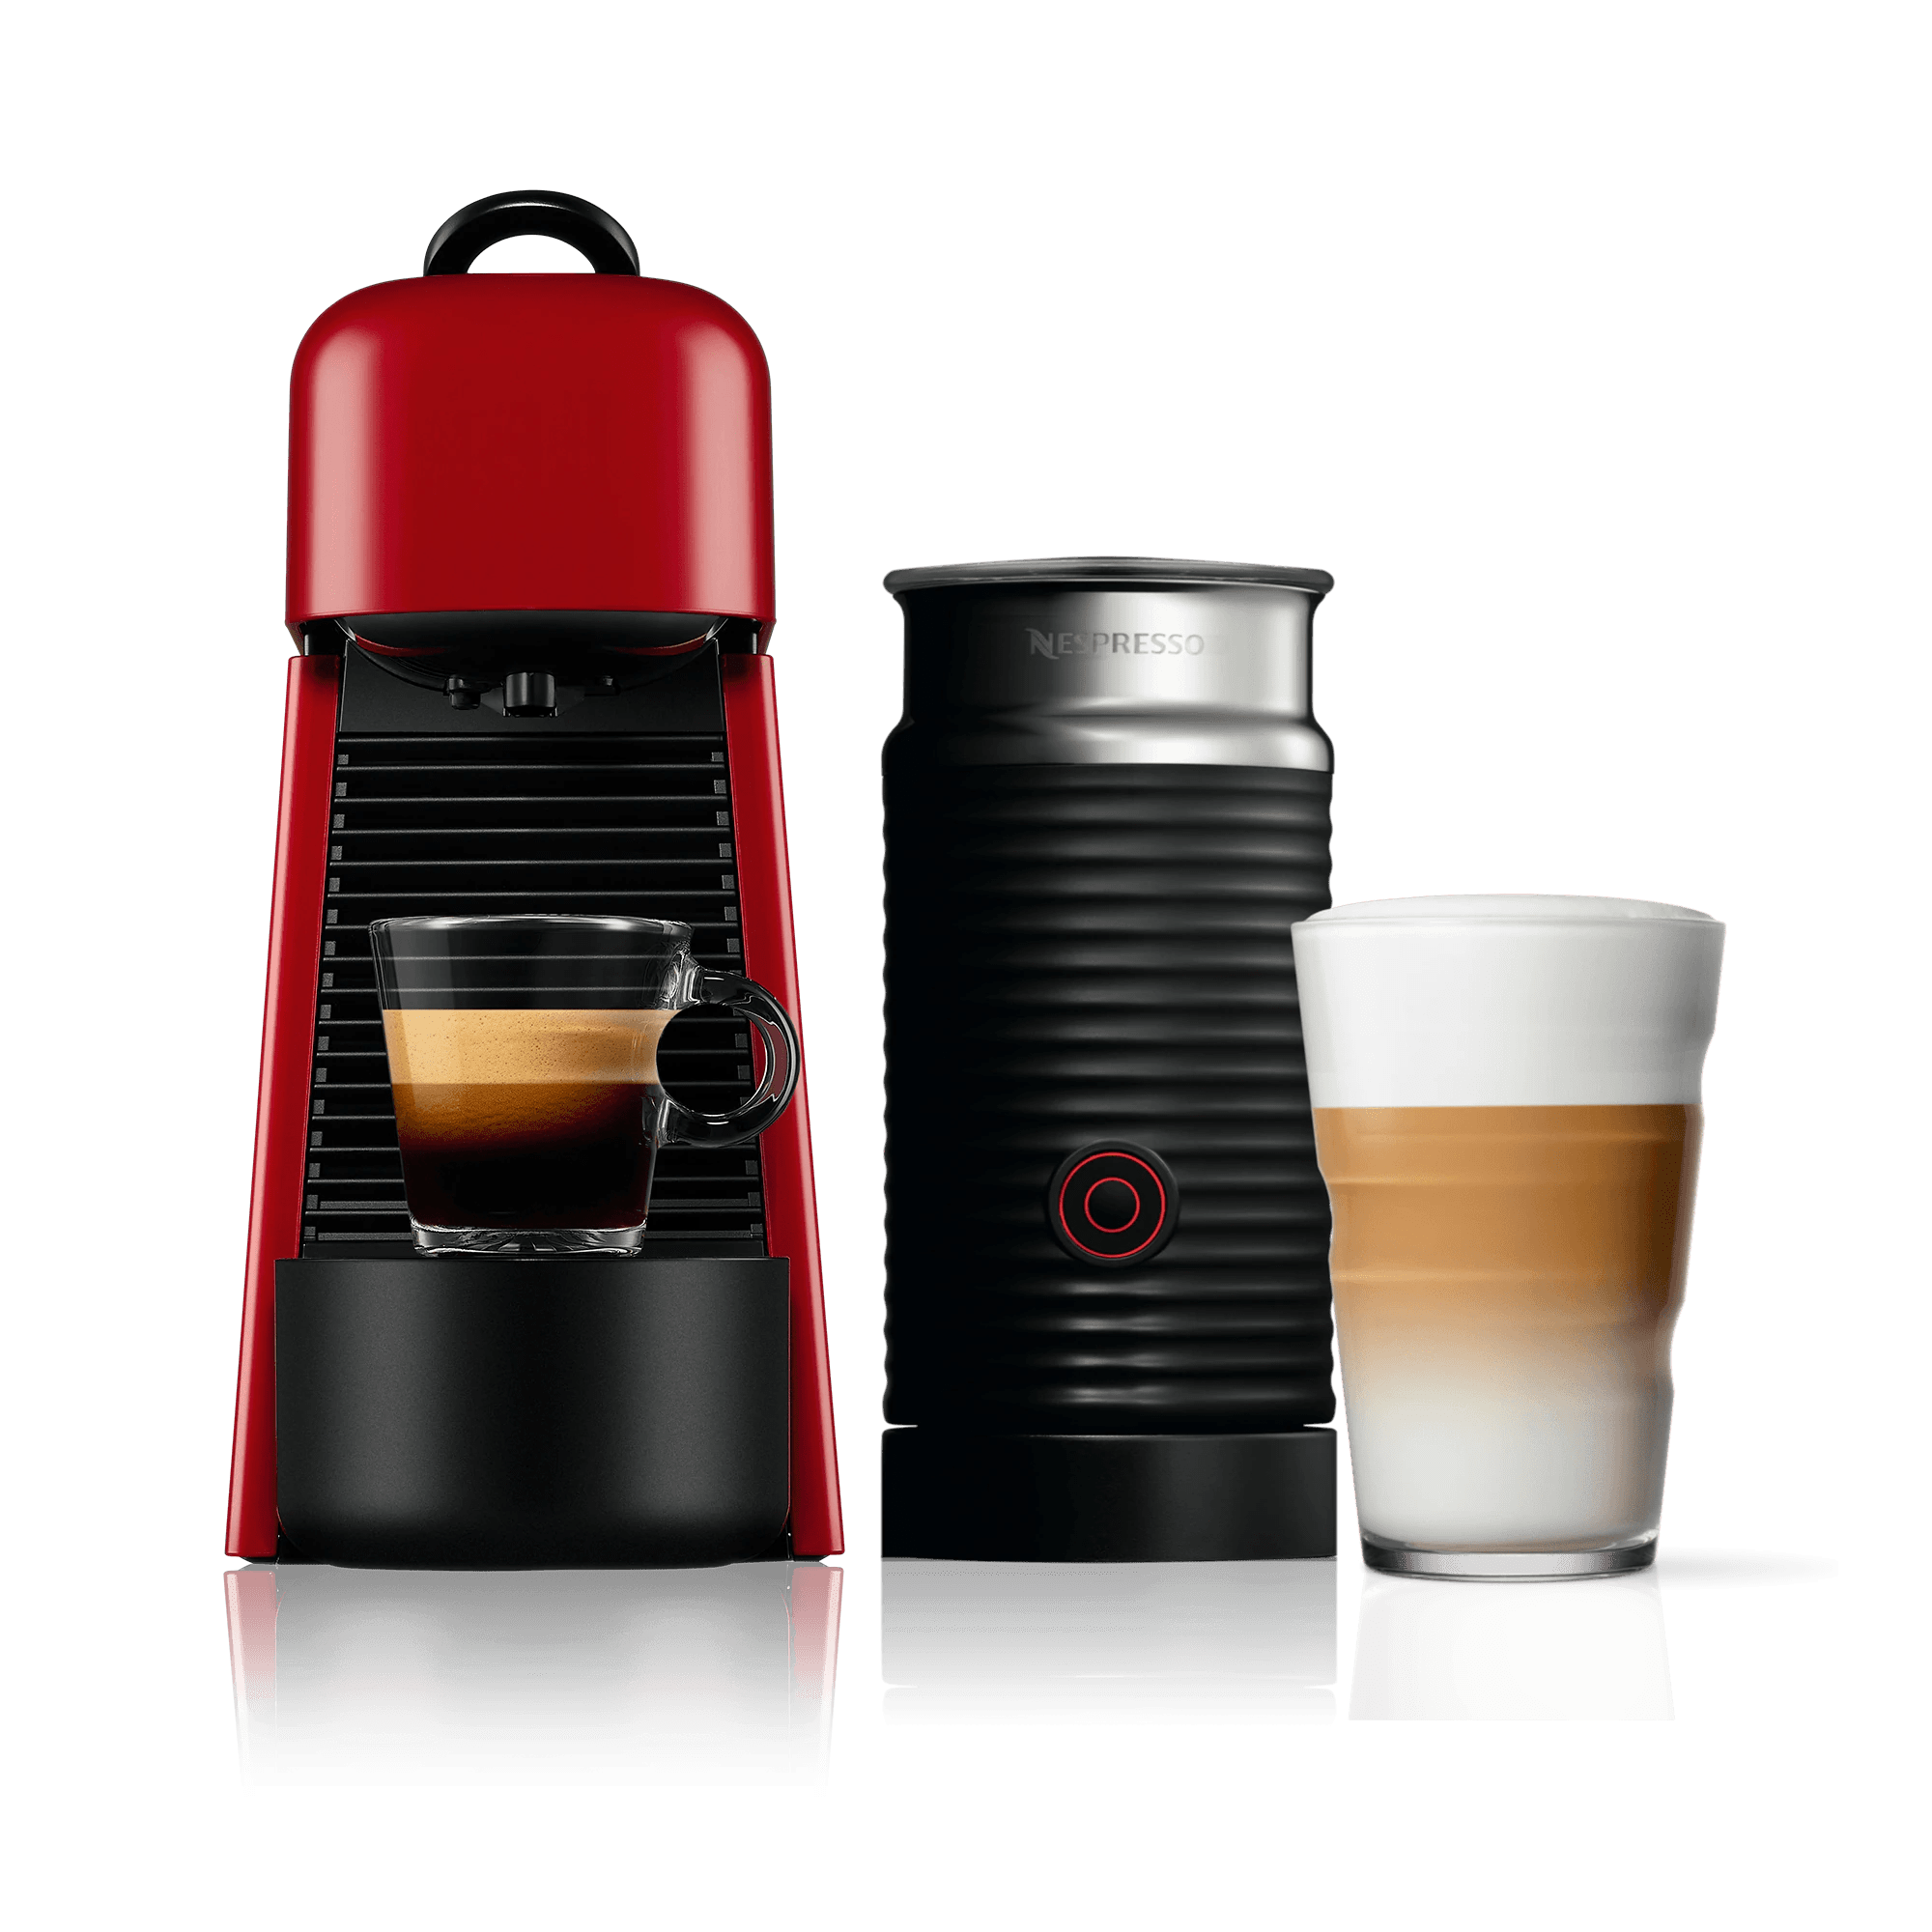 Nespresso Coffee Machines: Compare Models & Prices | Nespresso™ SG